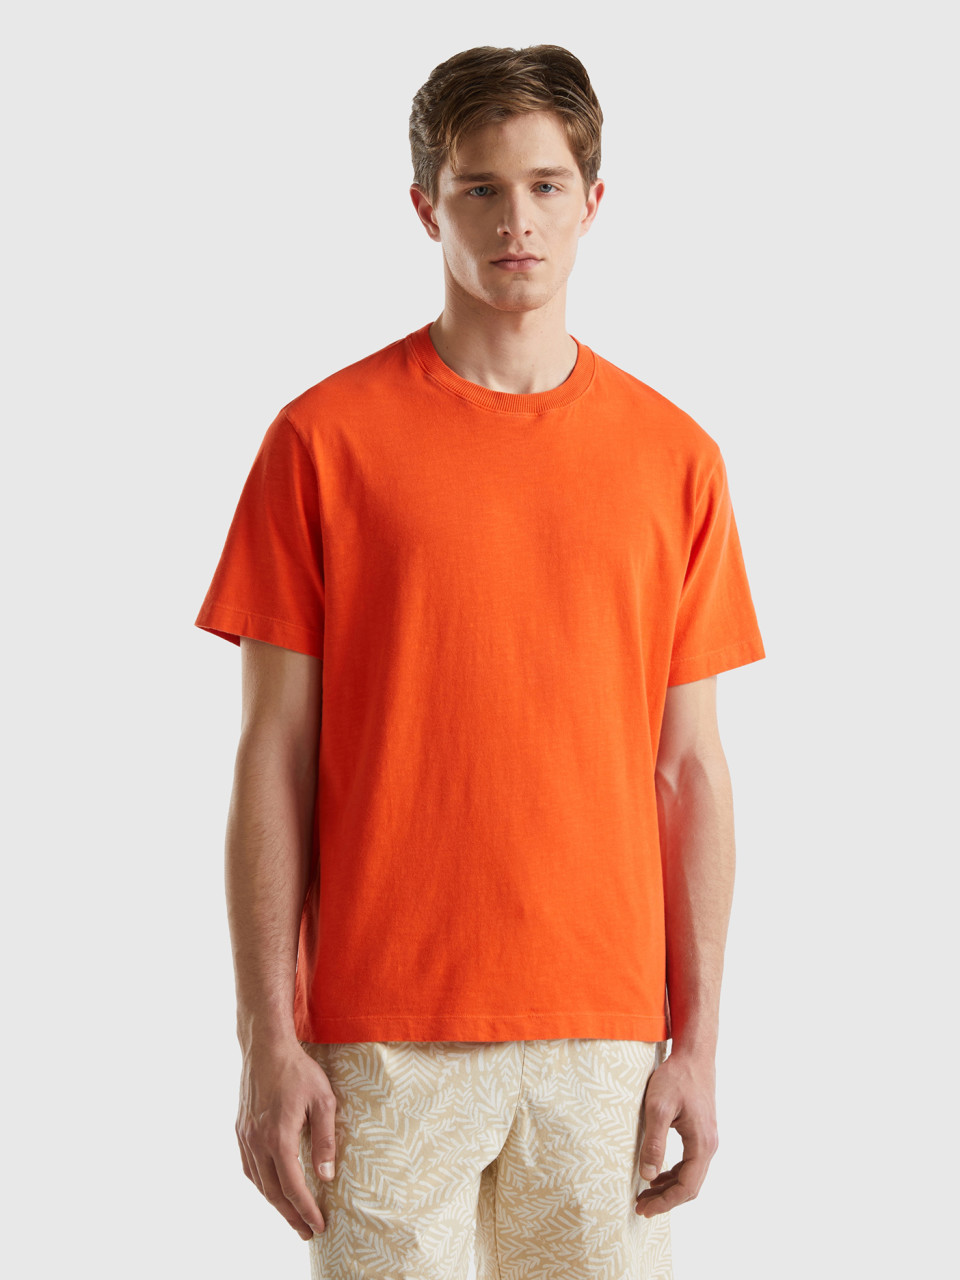 Benetton, Lightweight Relaxed Fit T-shirt, Orange, Men